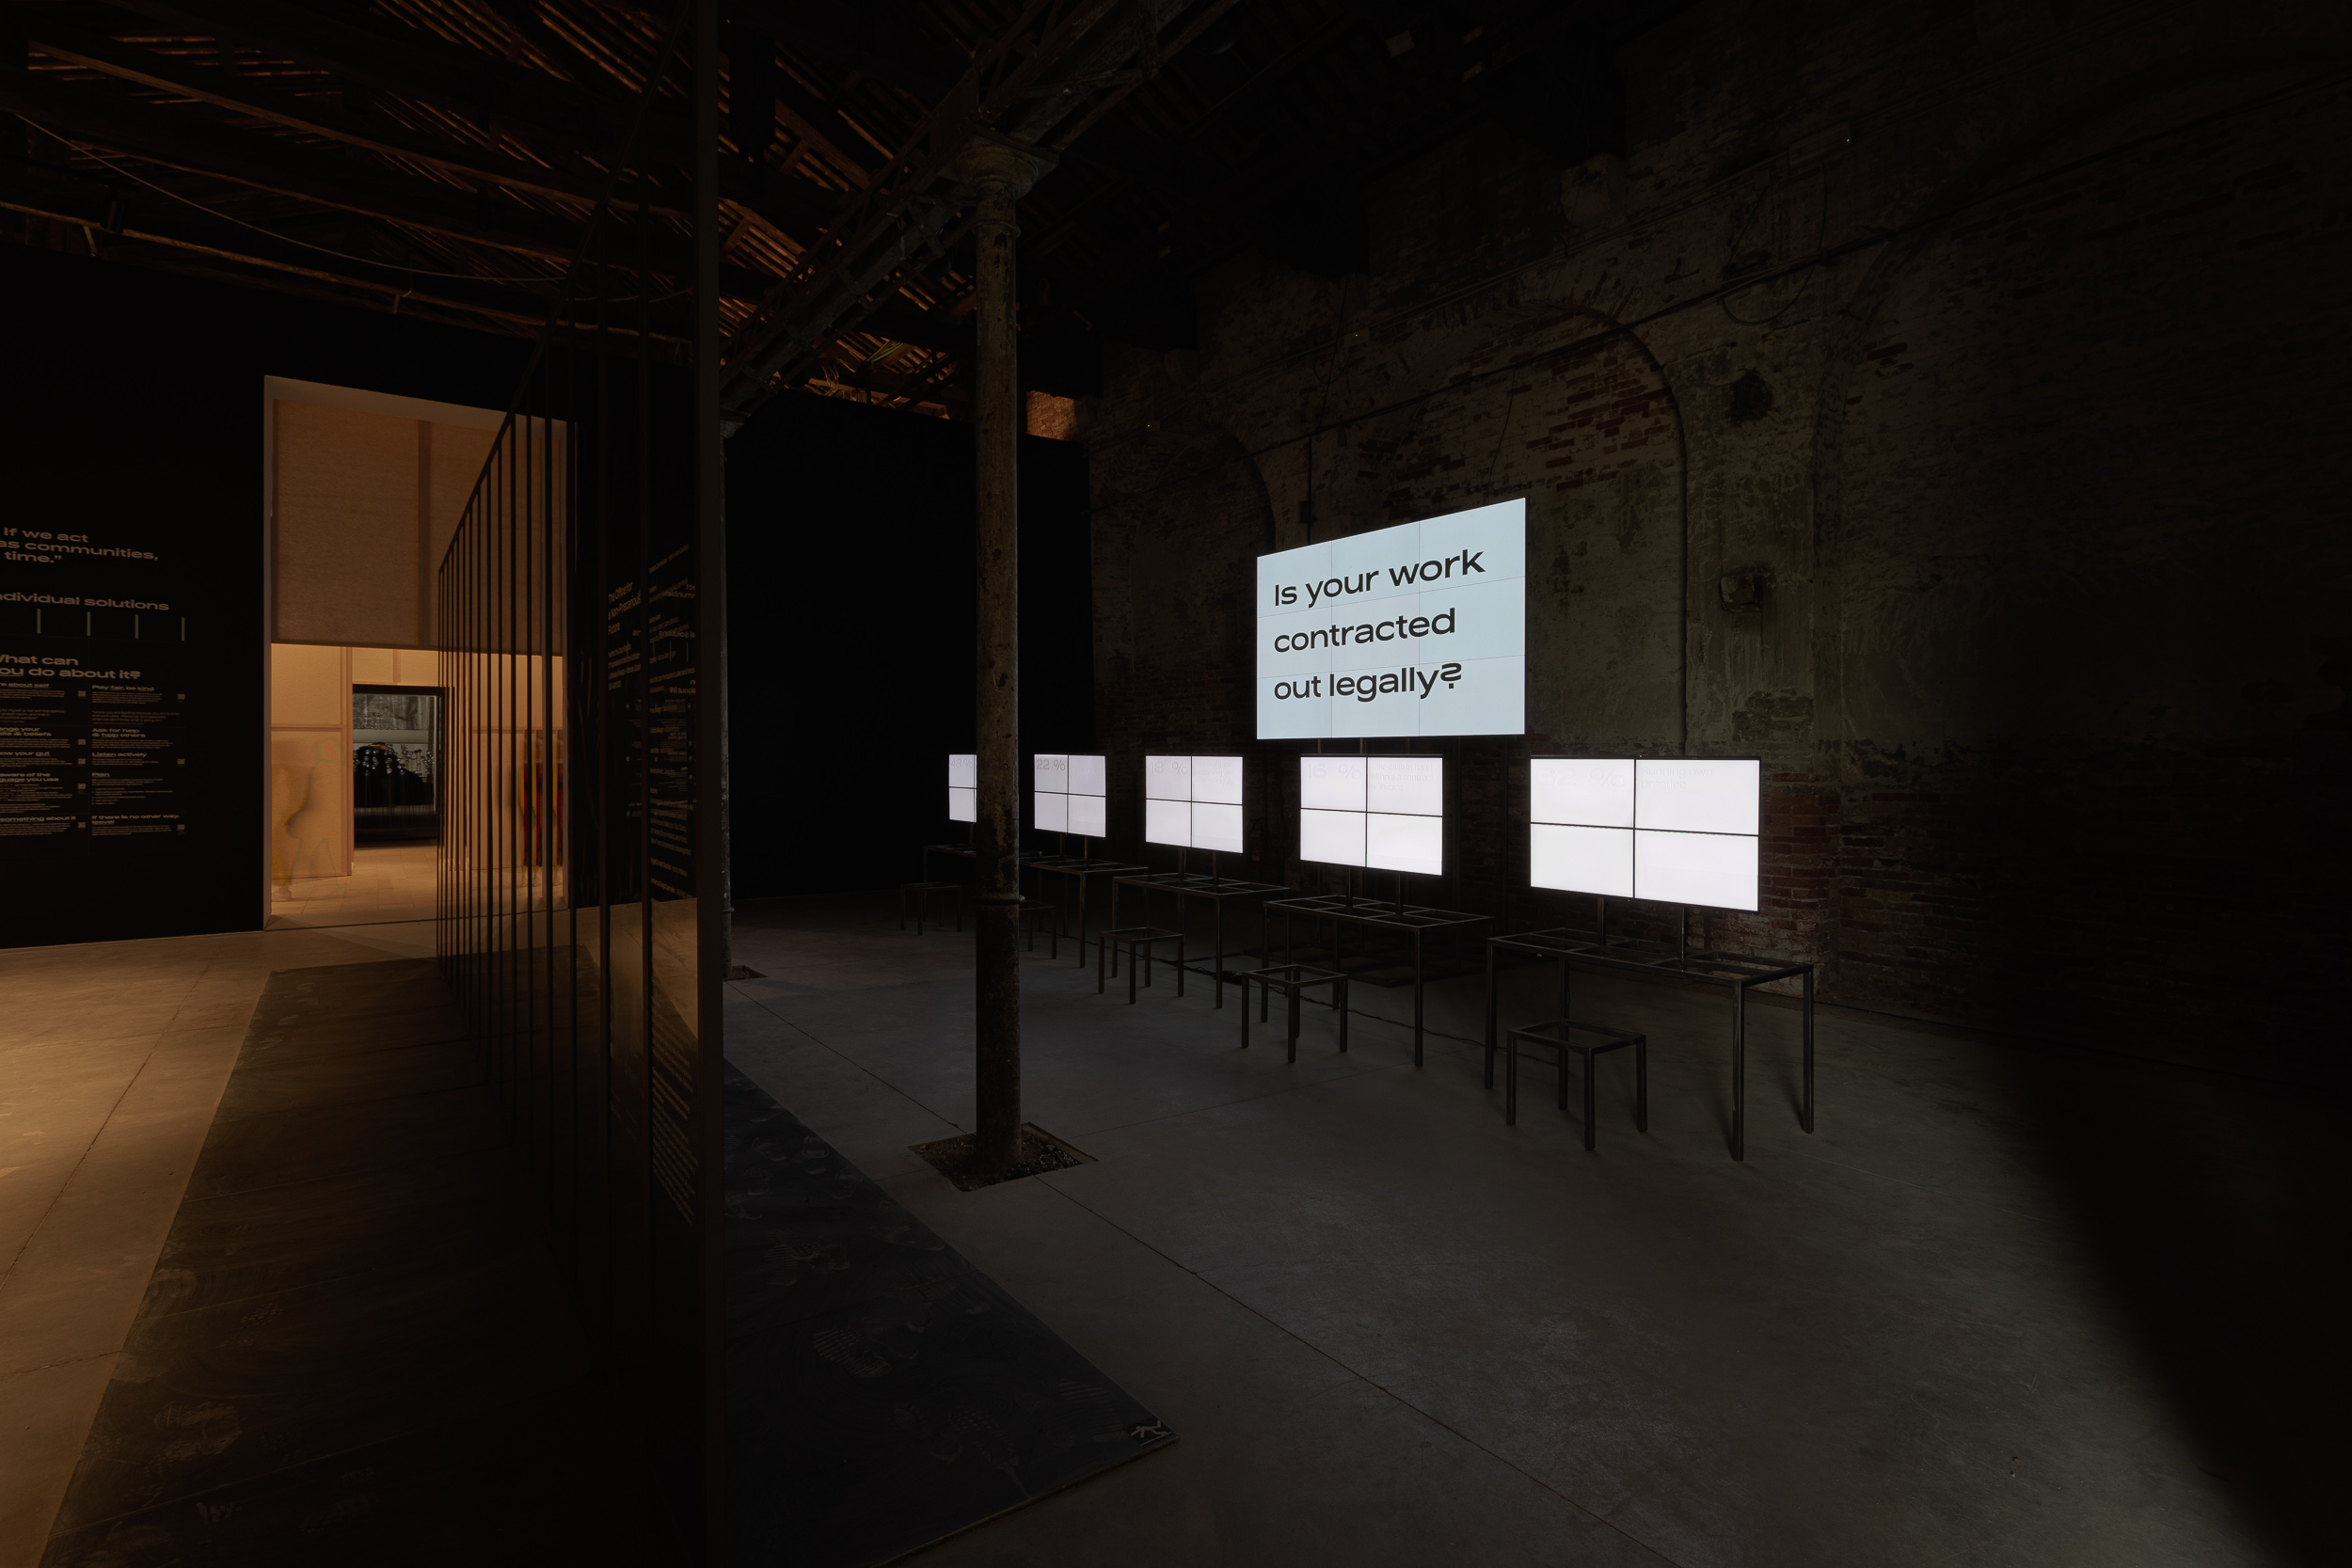 Czech pavilion exhibition at Architecture Biennale in Venice